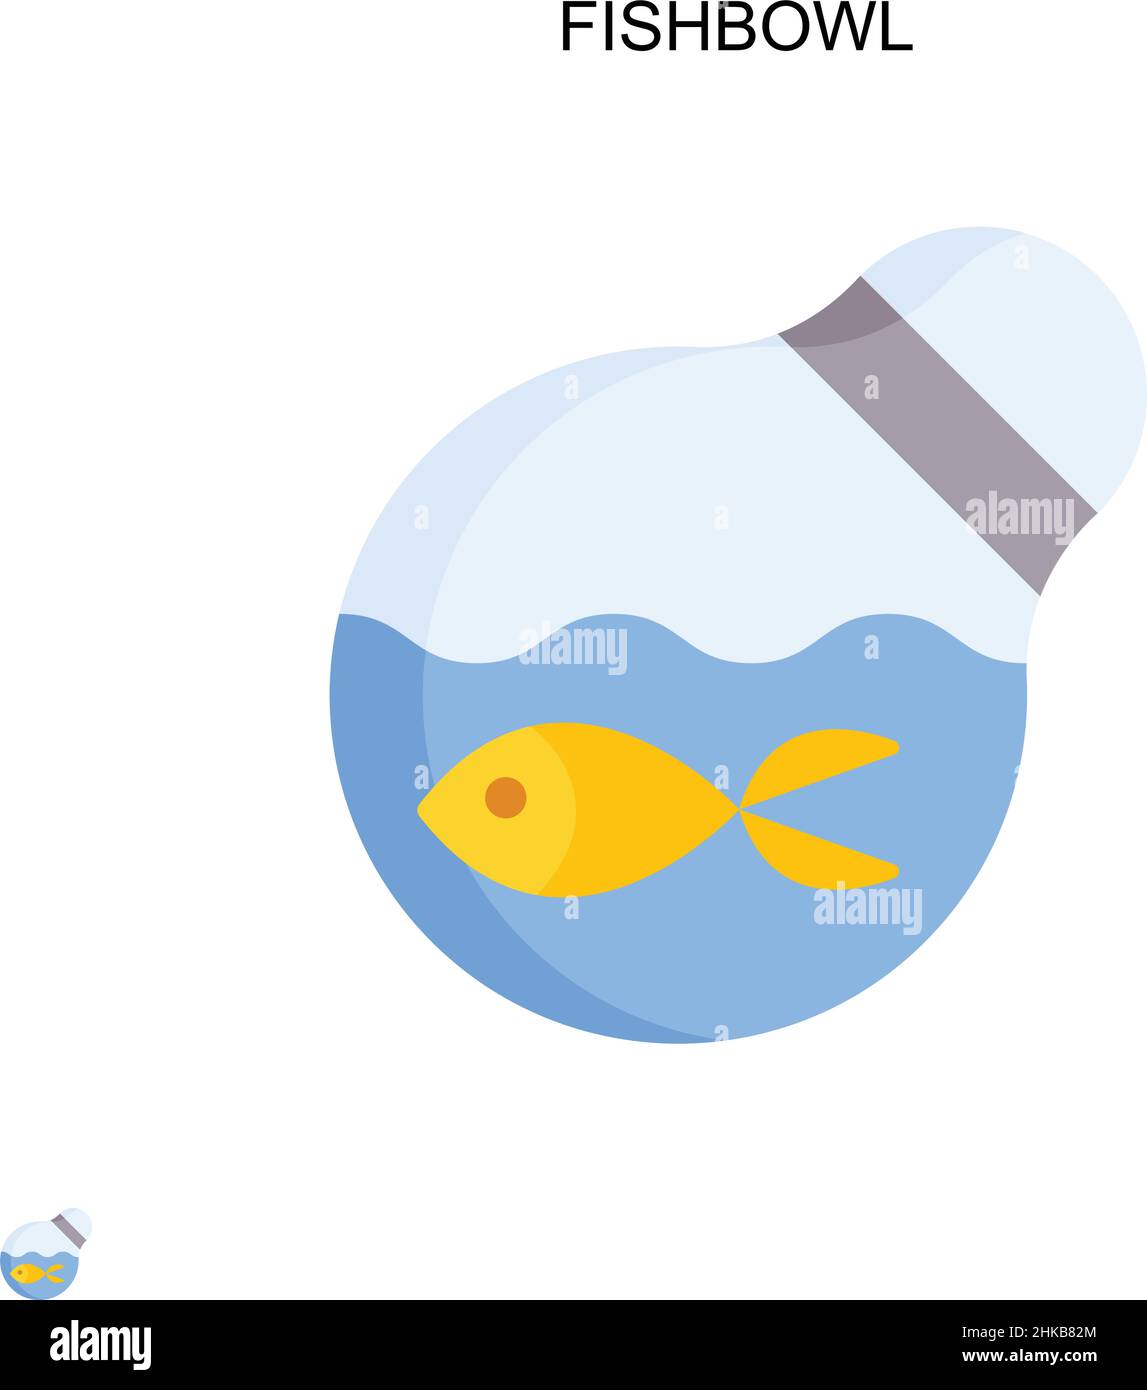 Icône de vecteur simple Fishbowl.Modèle de conception de symbole d'illustration pour élément d'interface utilisateur Web mobile. Illustration de Vecteur